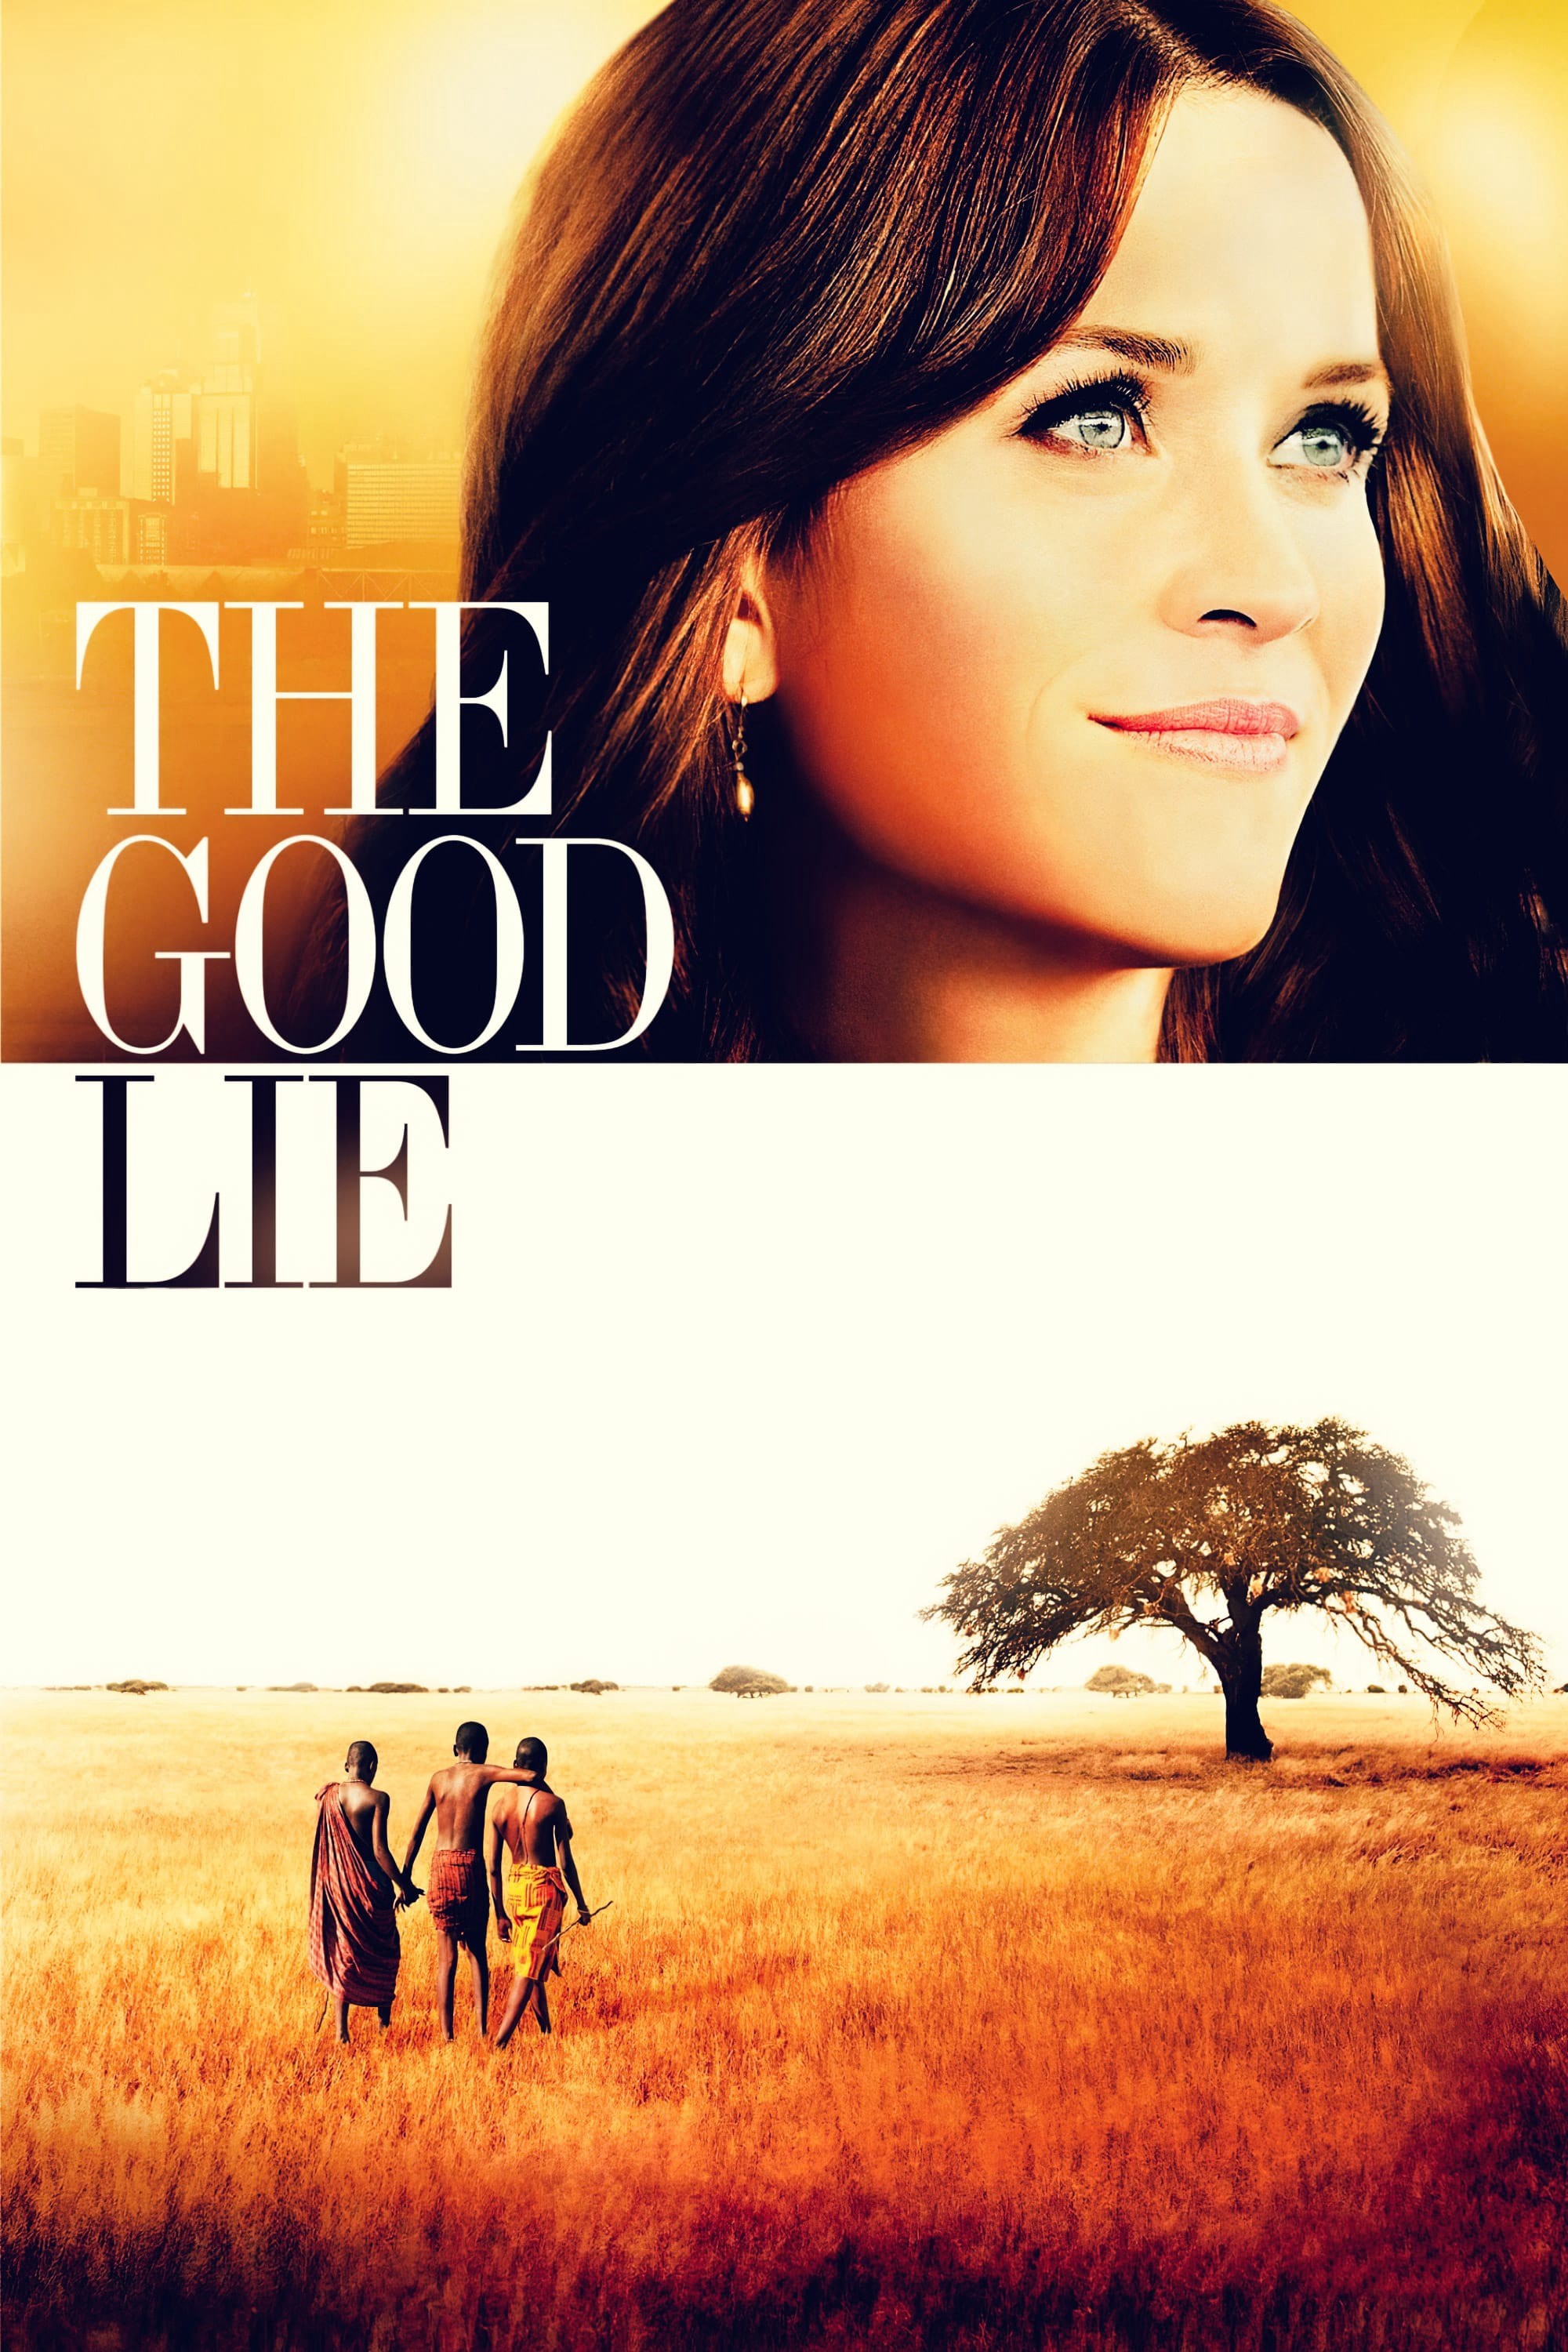 The Good Lie 2014